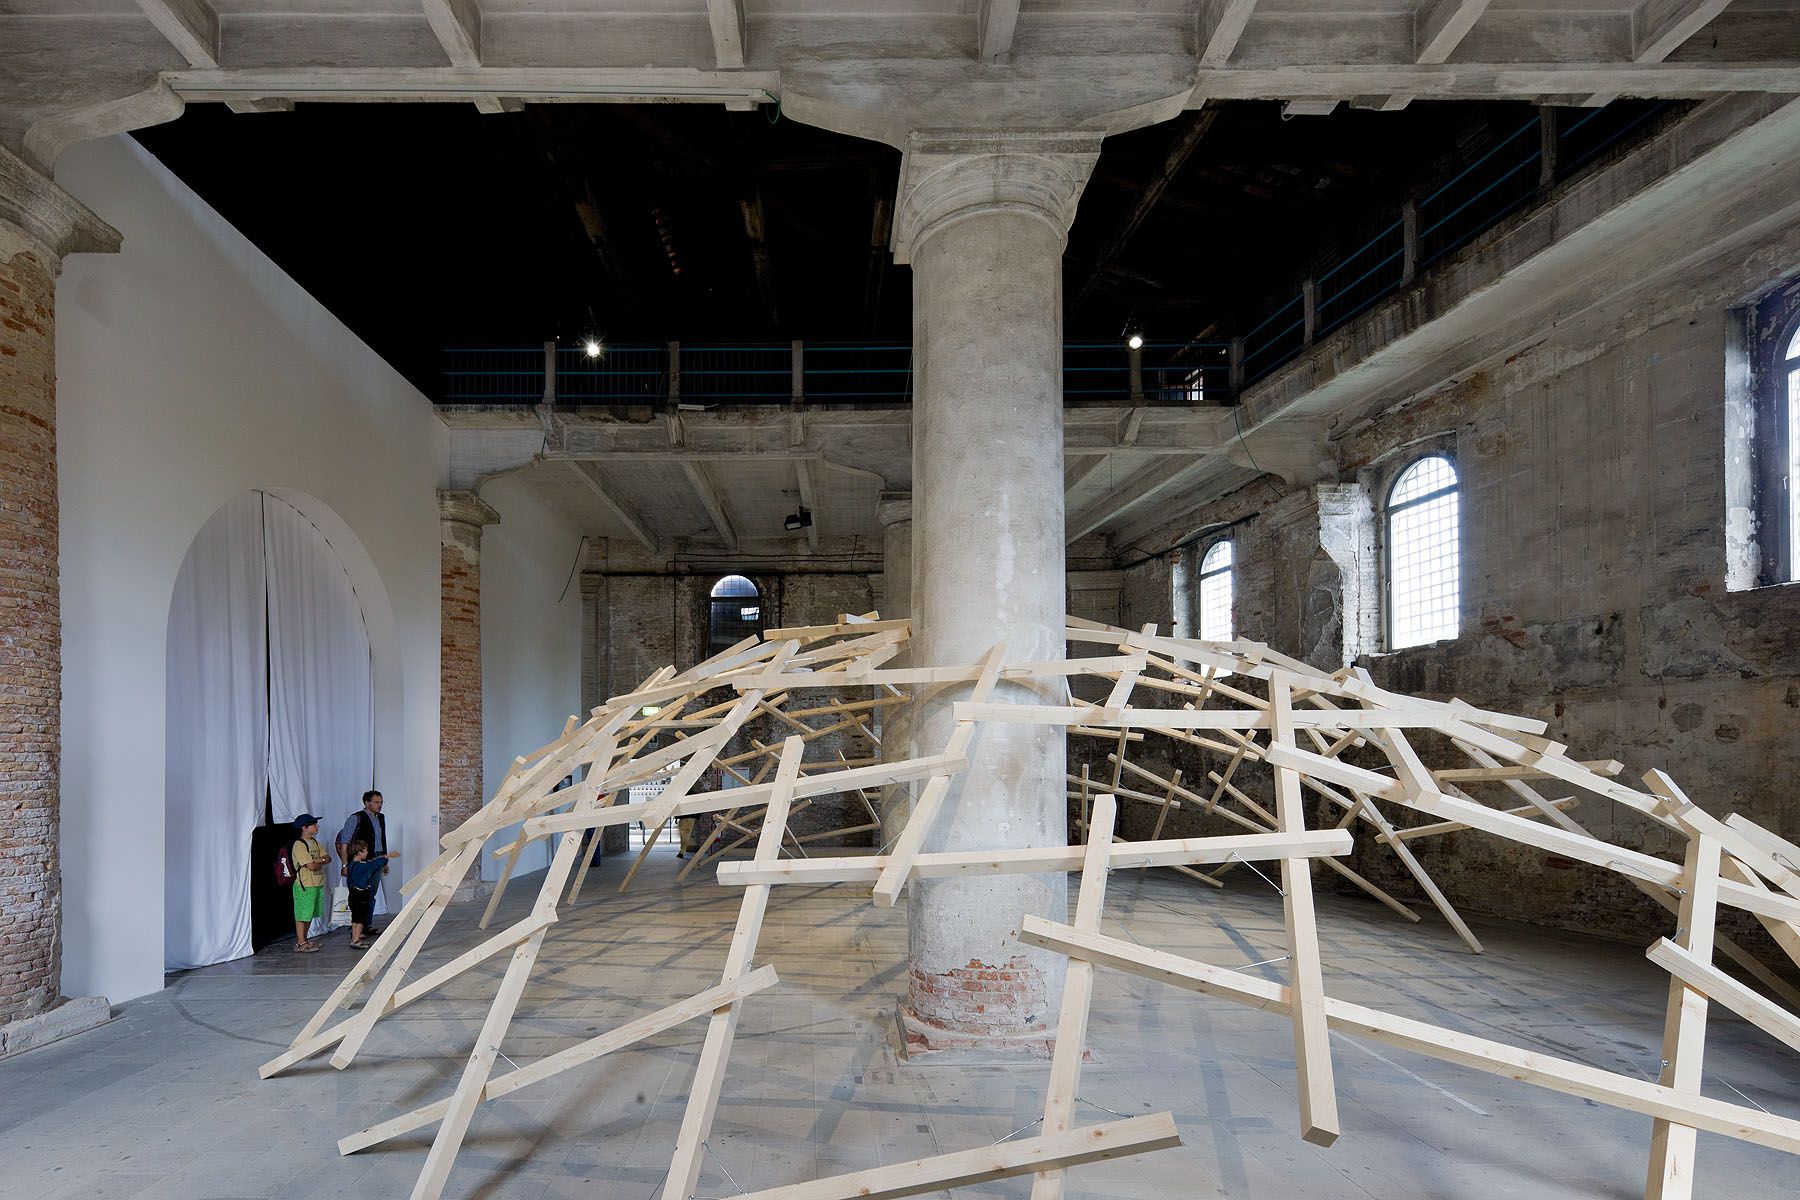 Venice Biennale 2010 – Wang Shu